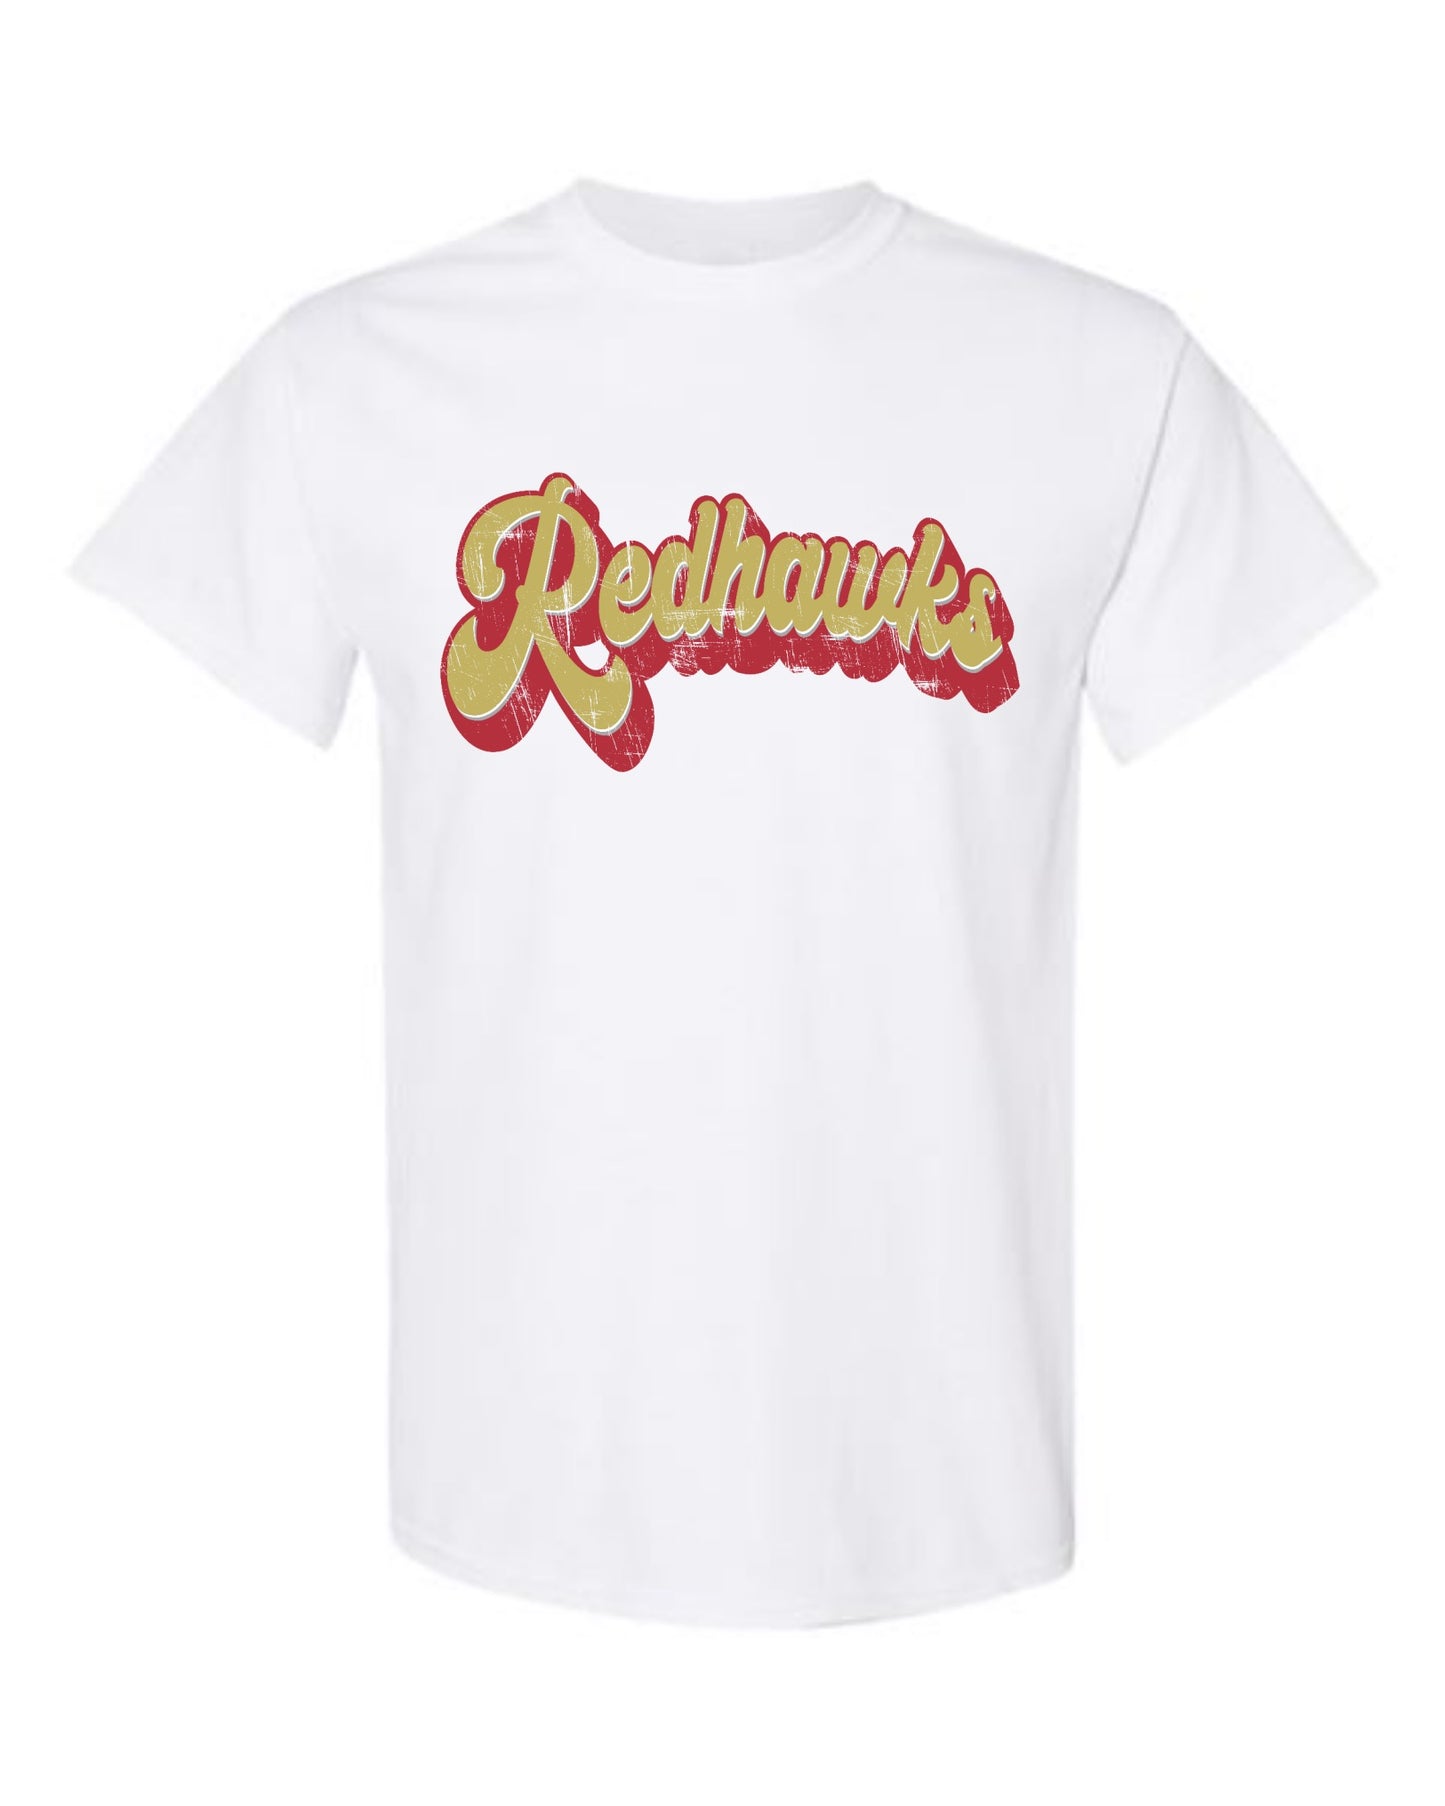 Distressed Retro Redhawks Tshirt